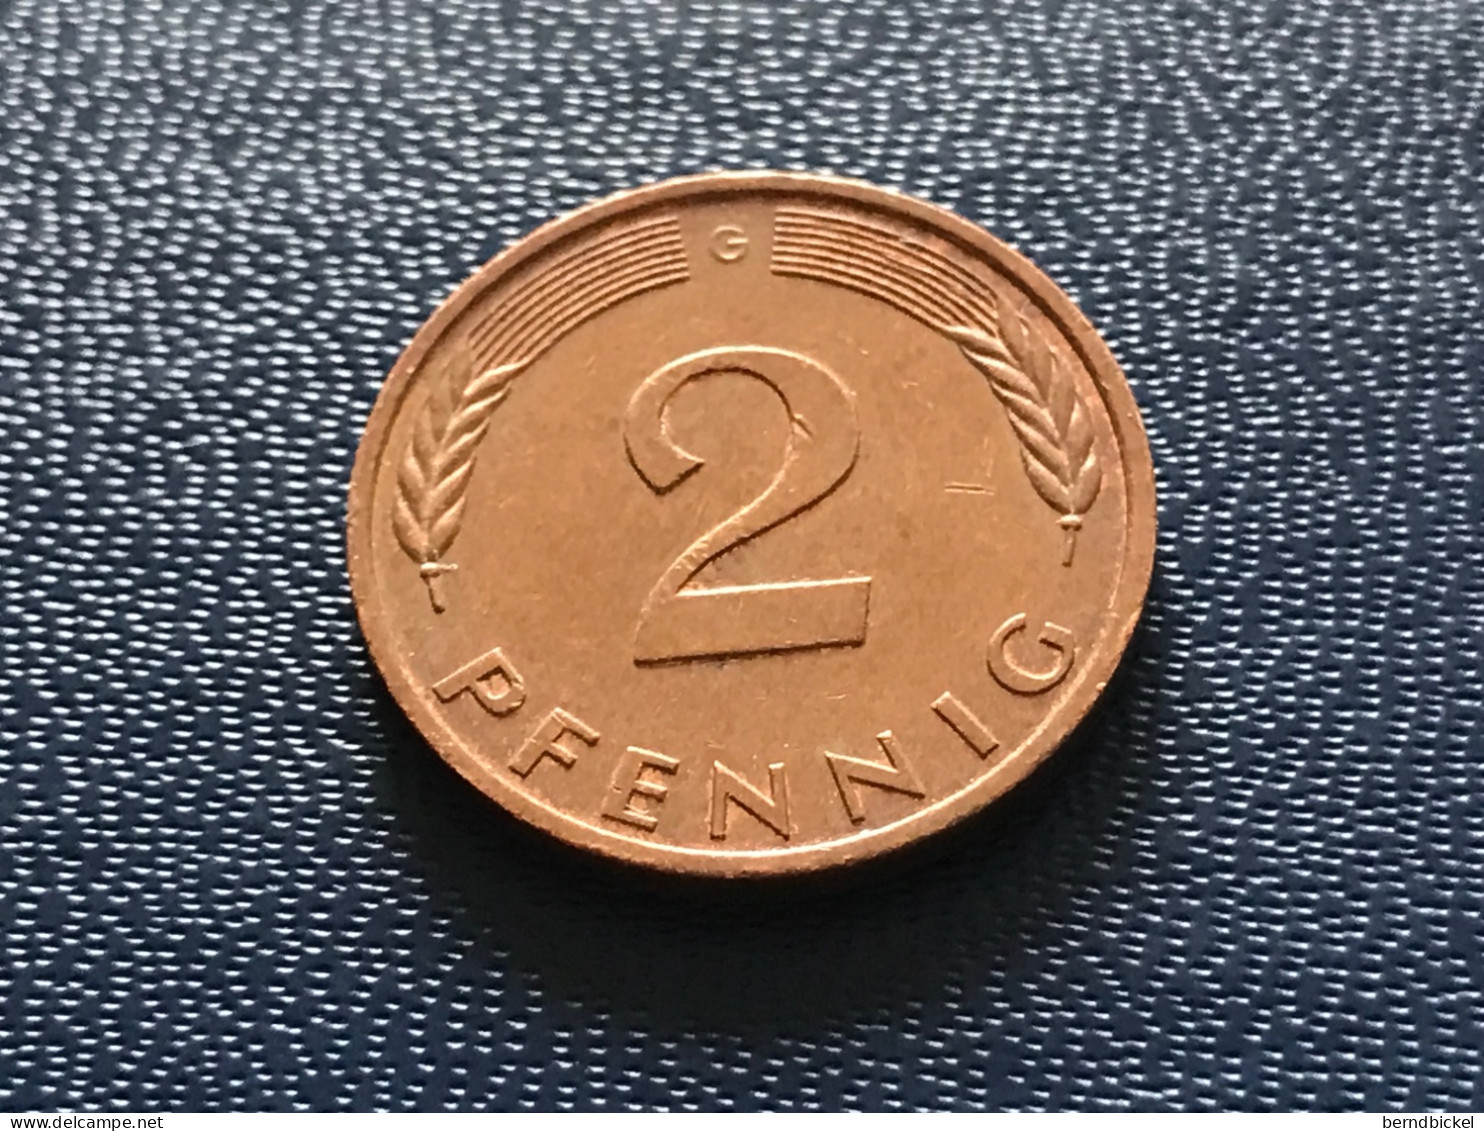 Münze Münzen Umlaufmünze Deutschland 2 Pfennig 1986 Münzzeichen G - 2 Pfennig